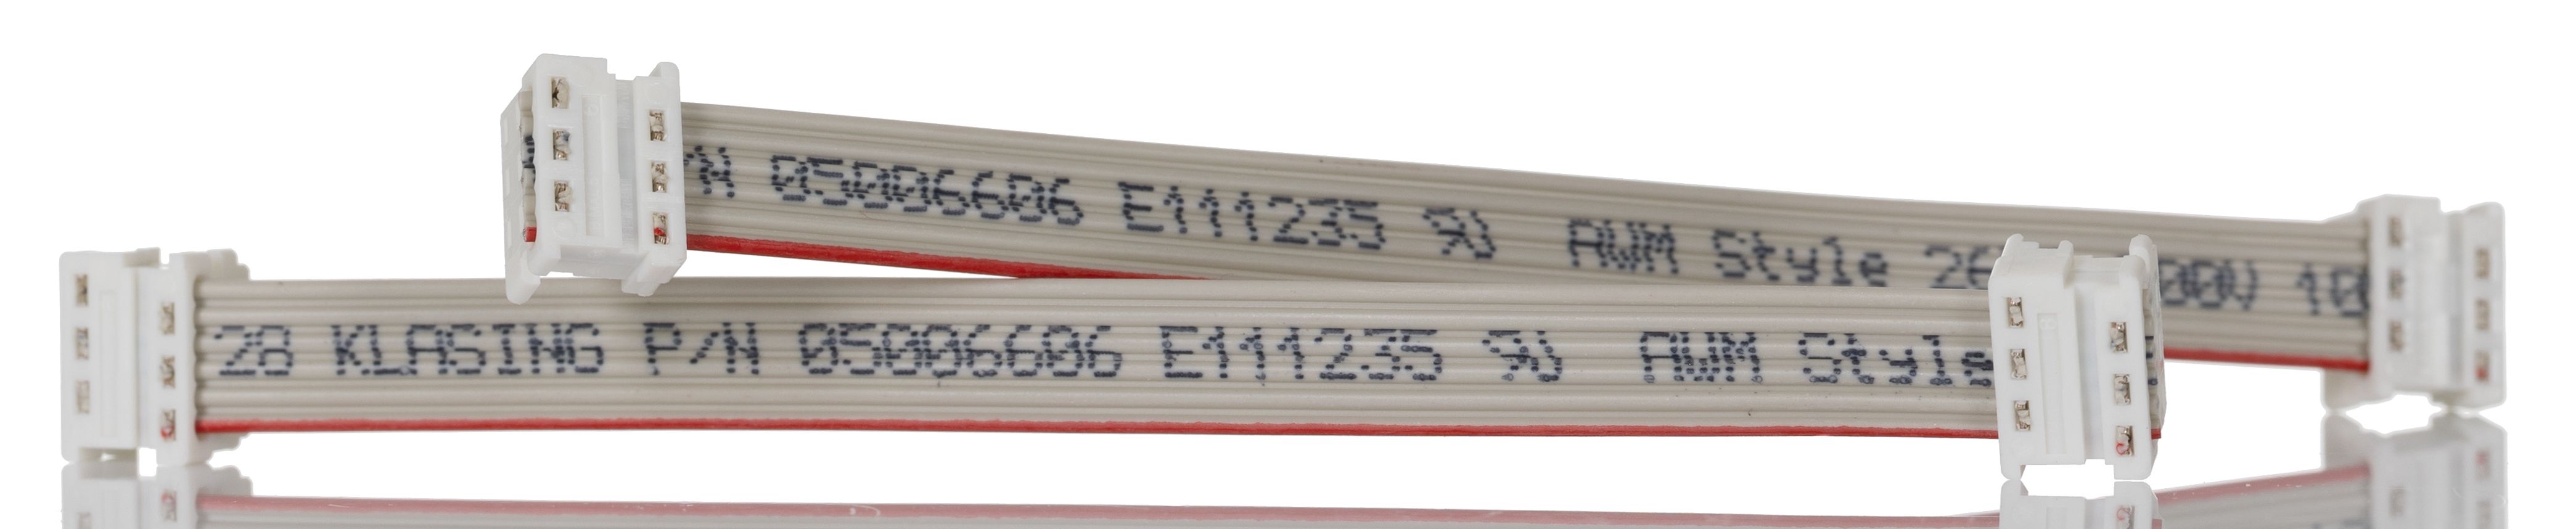 Molex 1.27mm 6 Way Female Picoflex IDC to Female Picoflex IDC Flat Ribbon Cable, Grey Sheath, 100mm Length